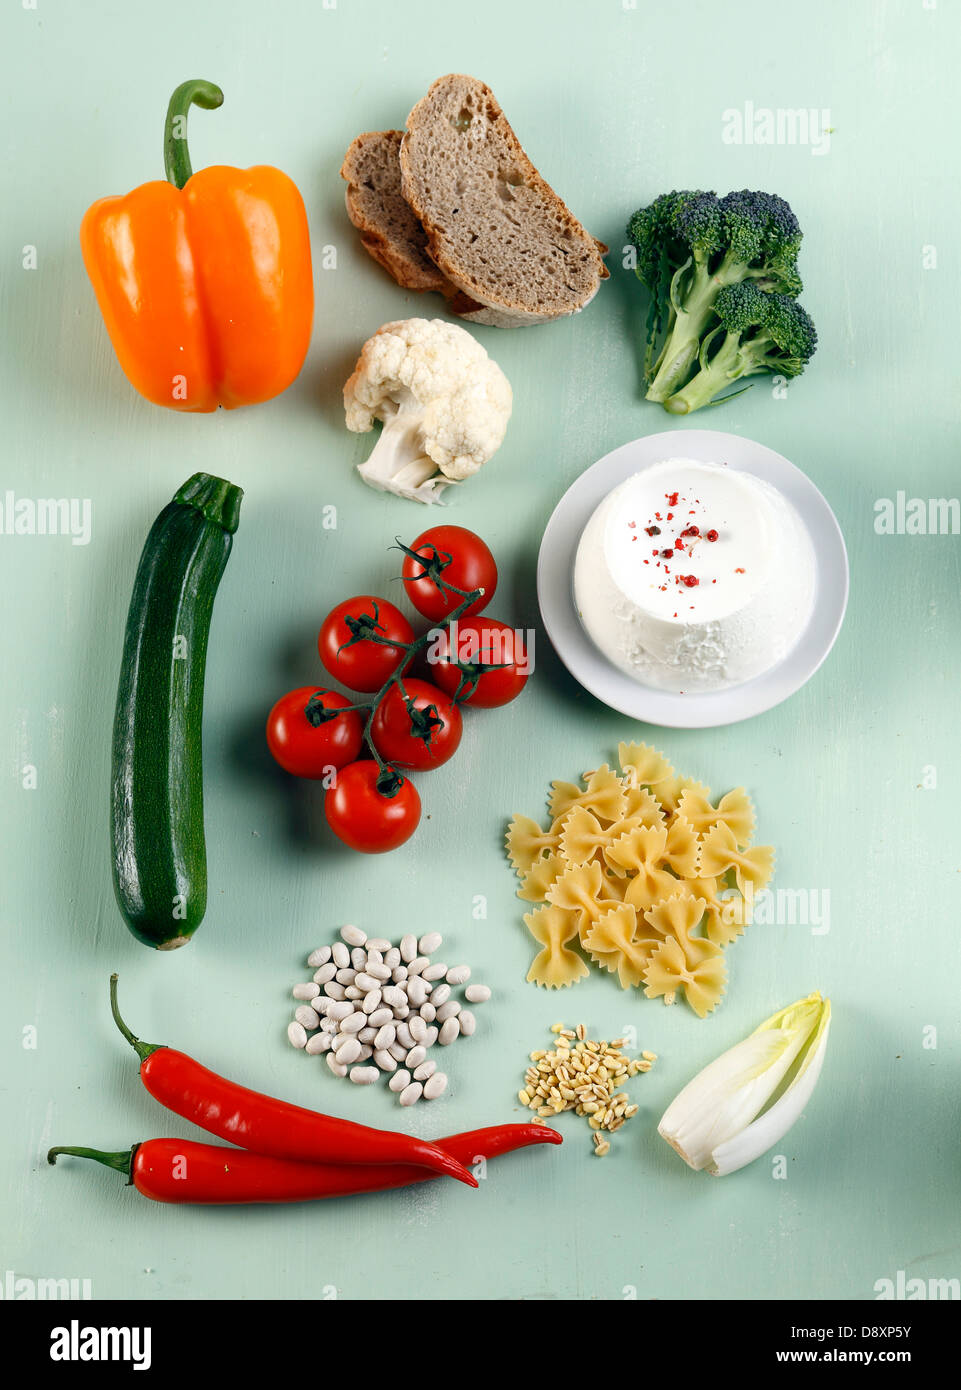 La composition avec des légumes, féculents et produits laitiers Banque D'Images